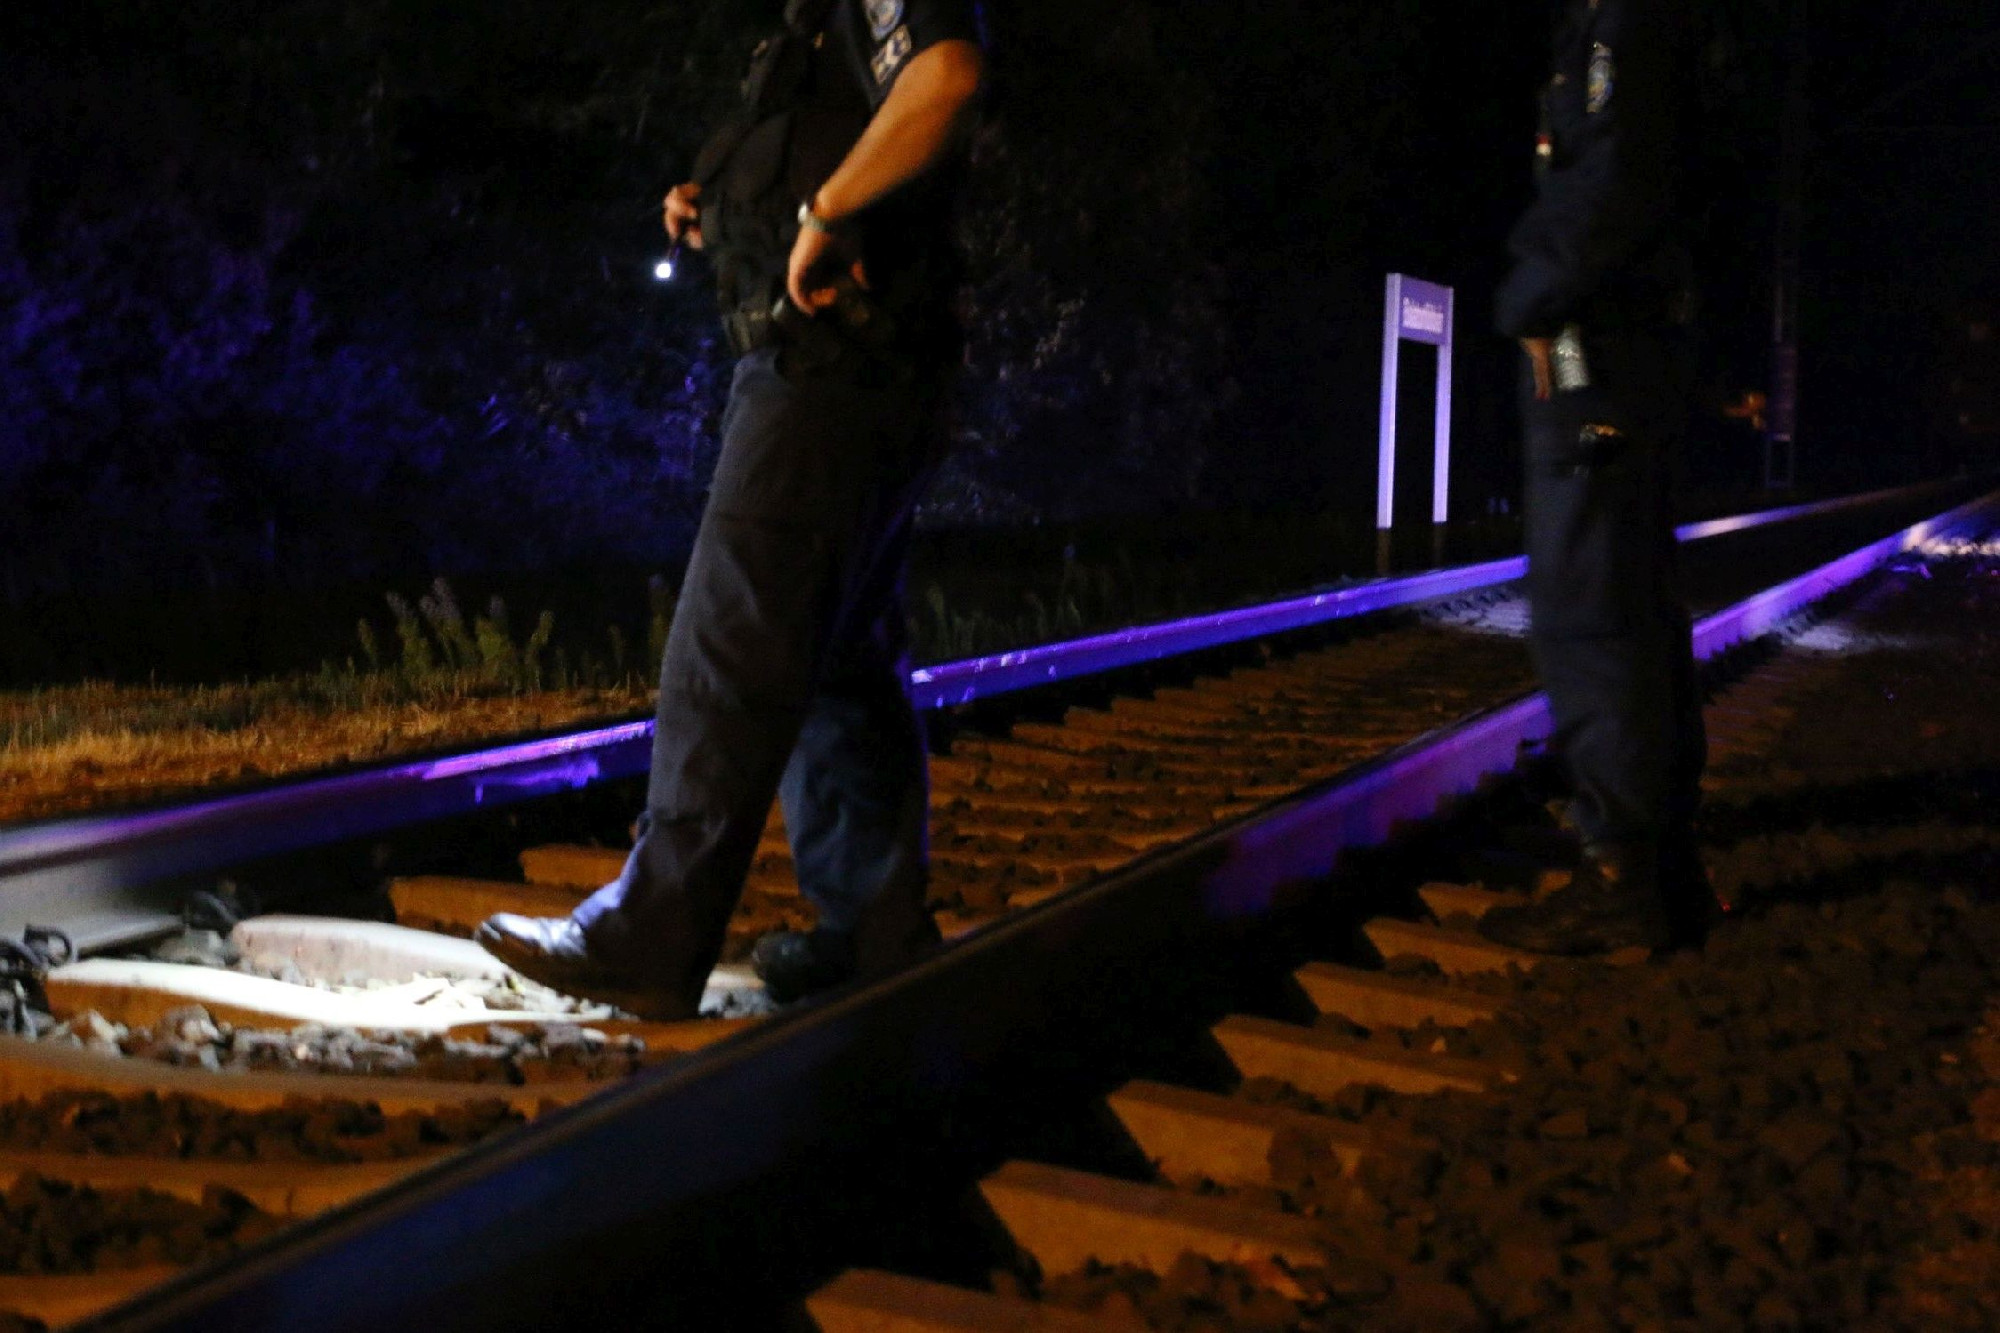 32 éves férfi lépett a vonat elé, nem tudták megmenteni